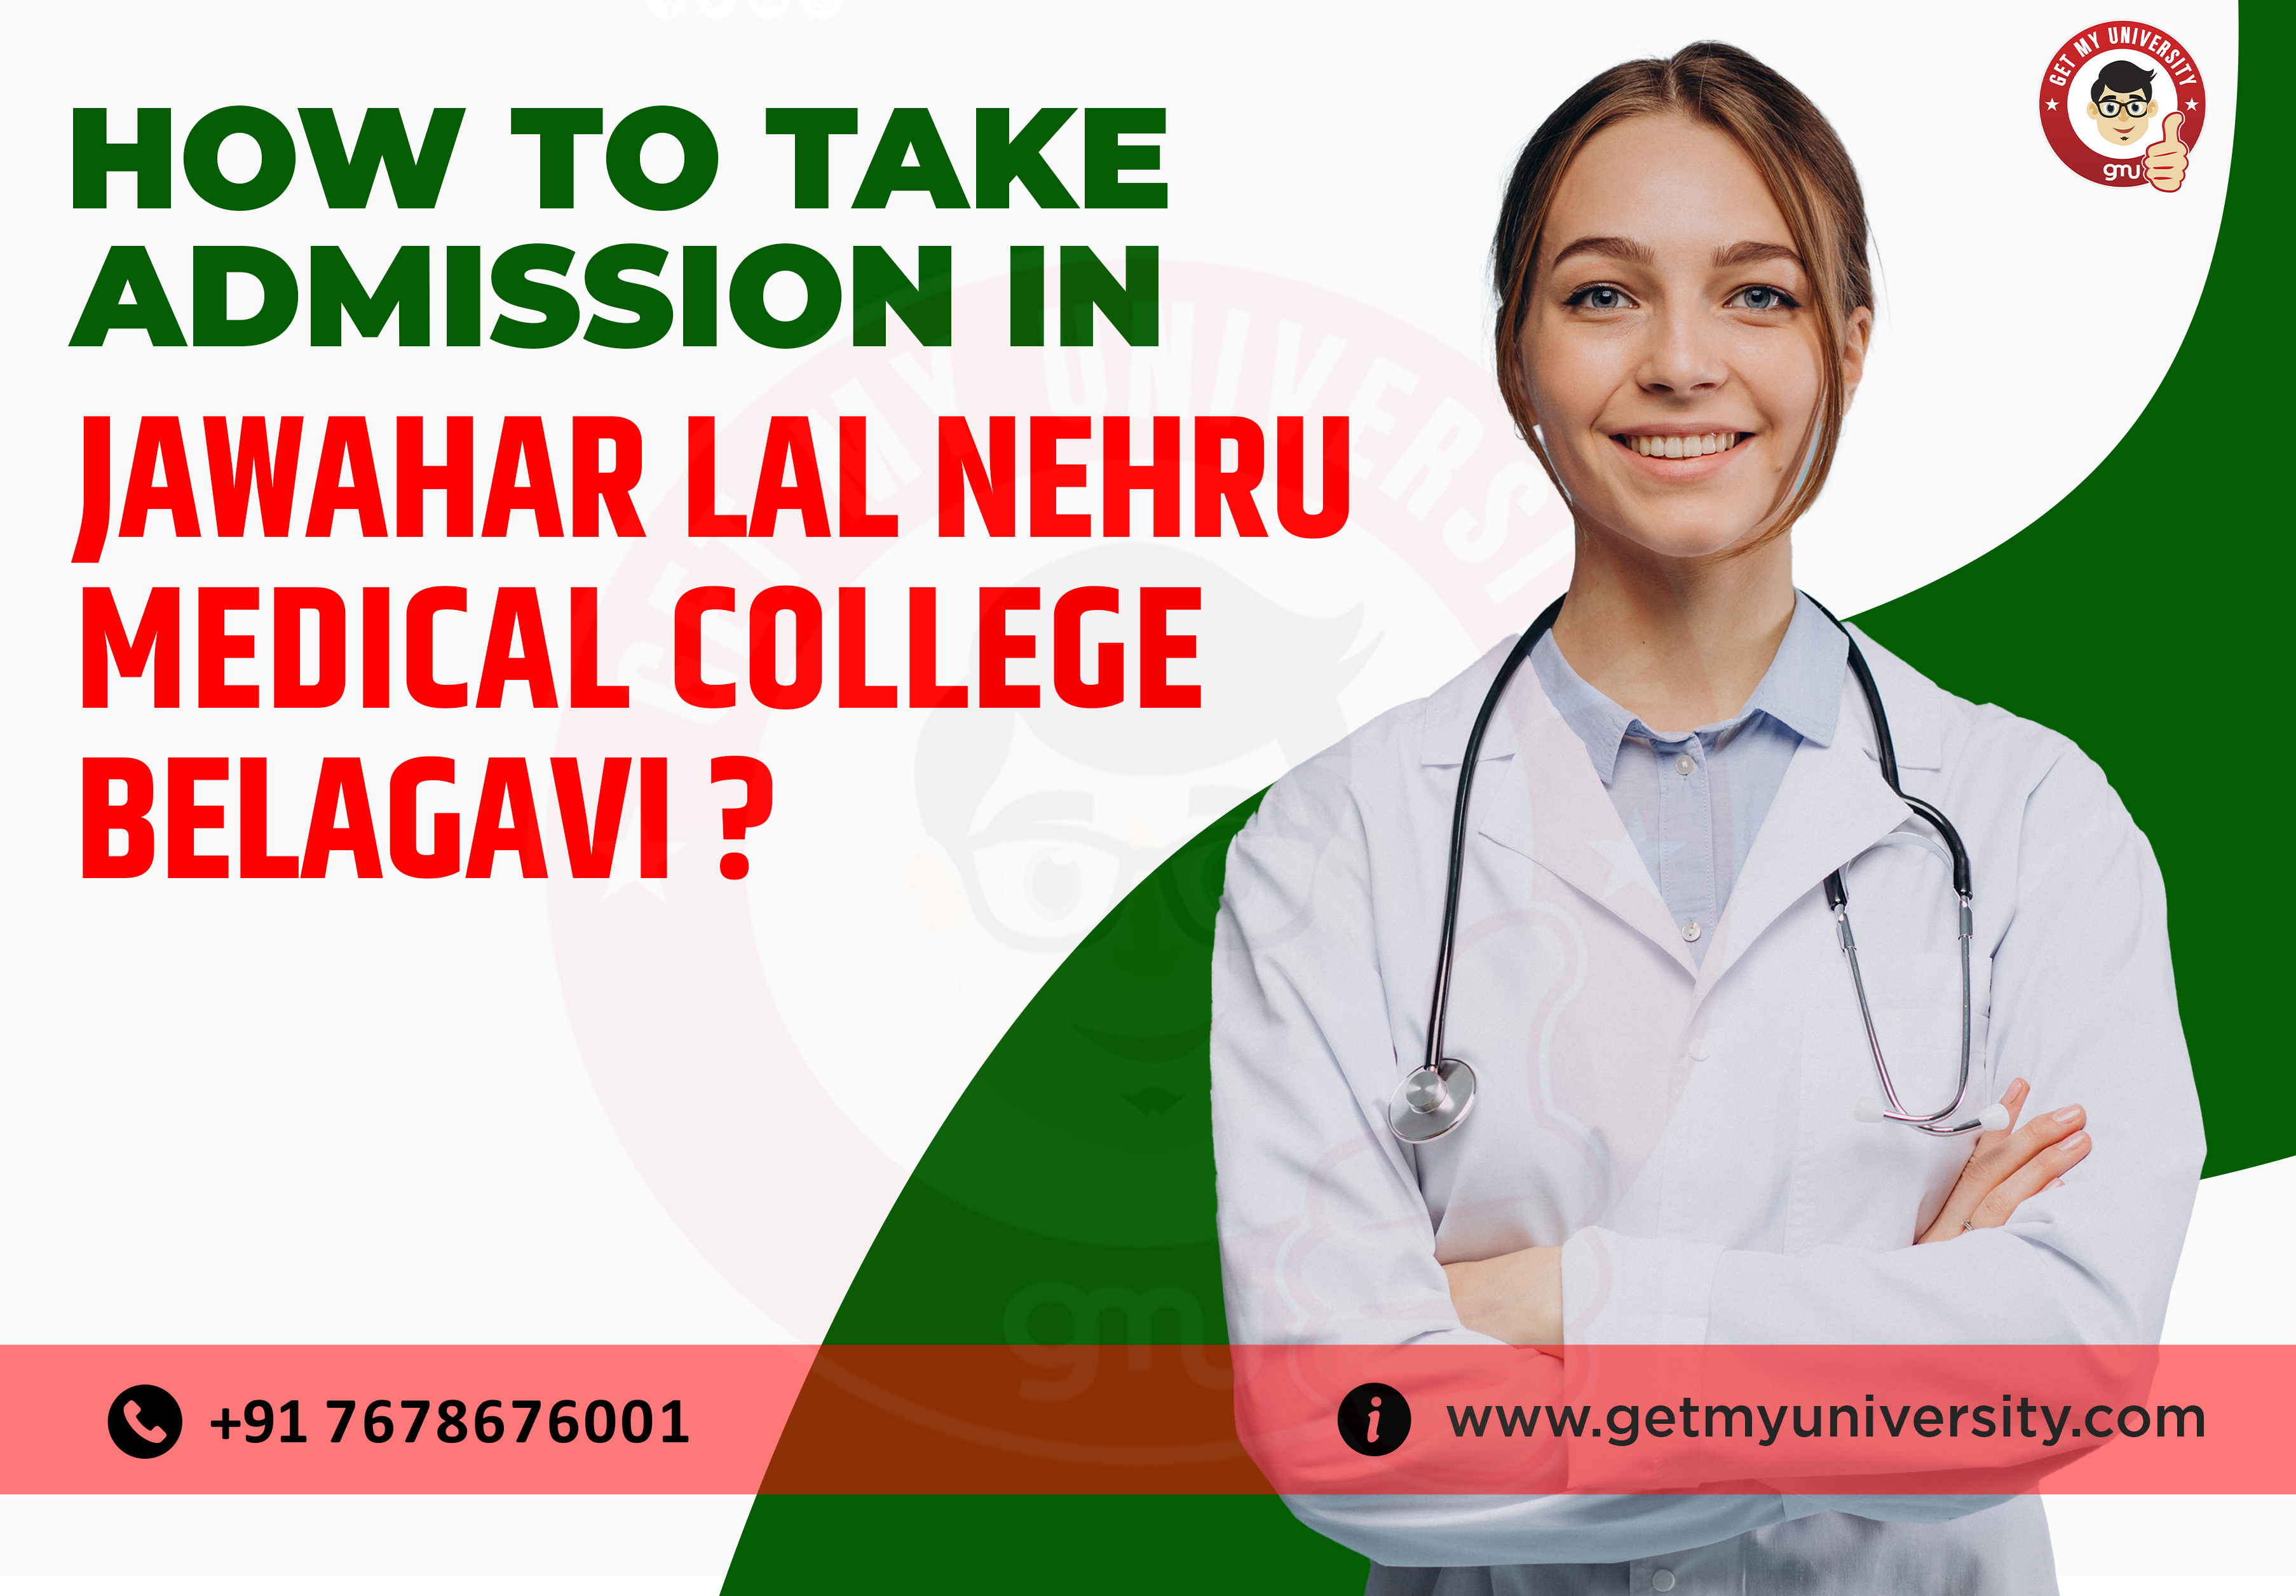 How to get Admission in Jawahar Lal Nehru Medical College, Belagavi?